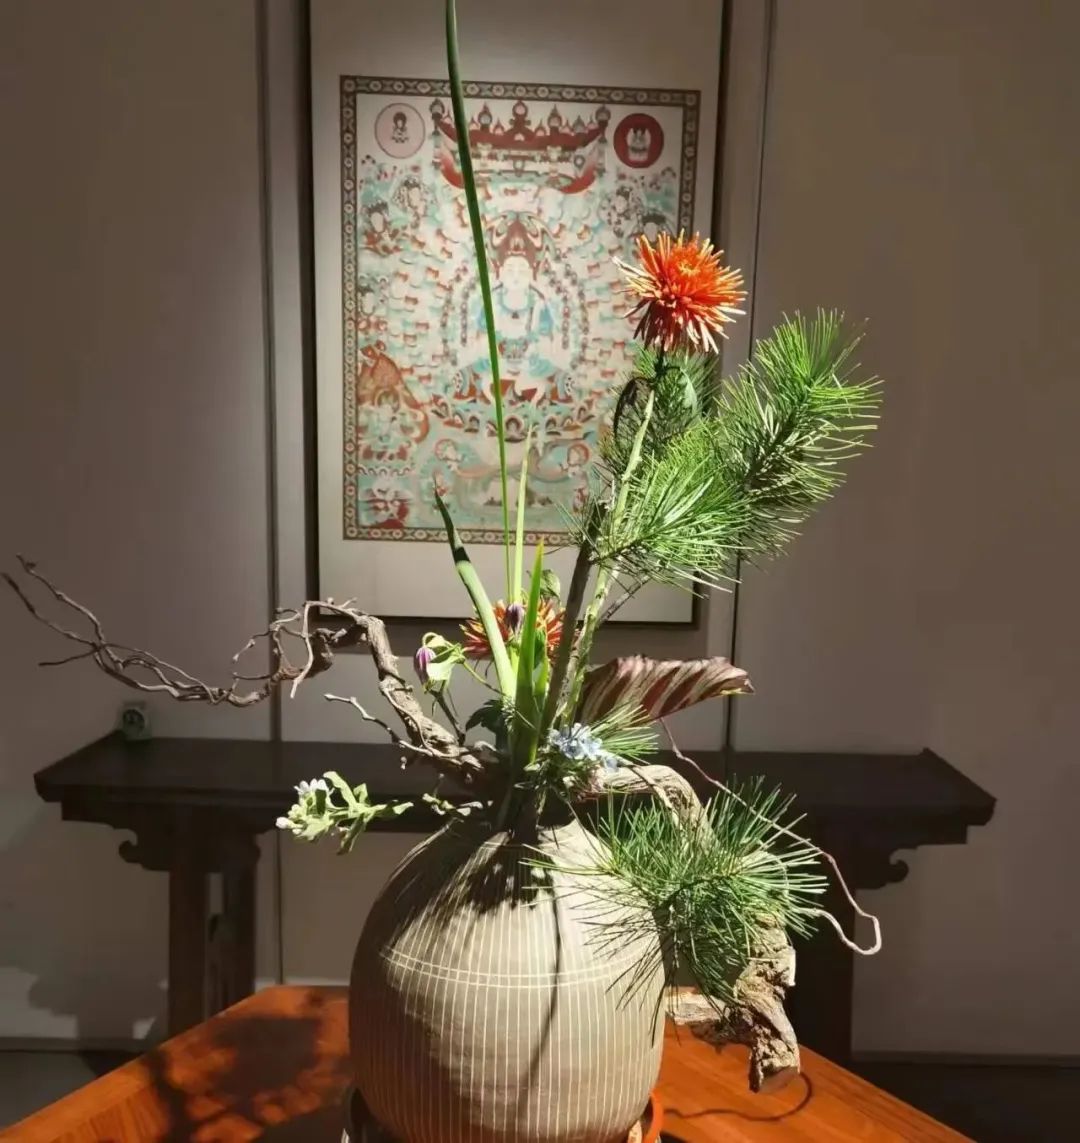 曹峰 | 花道与敦煌艺术的邂逅，诠释了自然、空灵、沉静、朴素的禅宗美学观